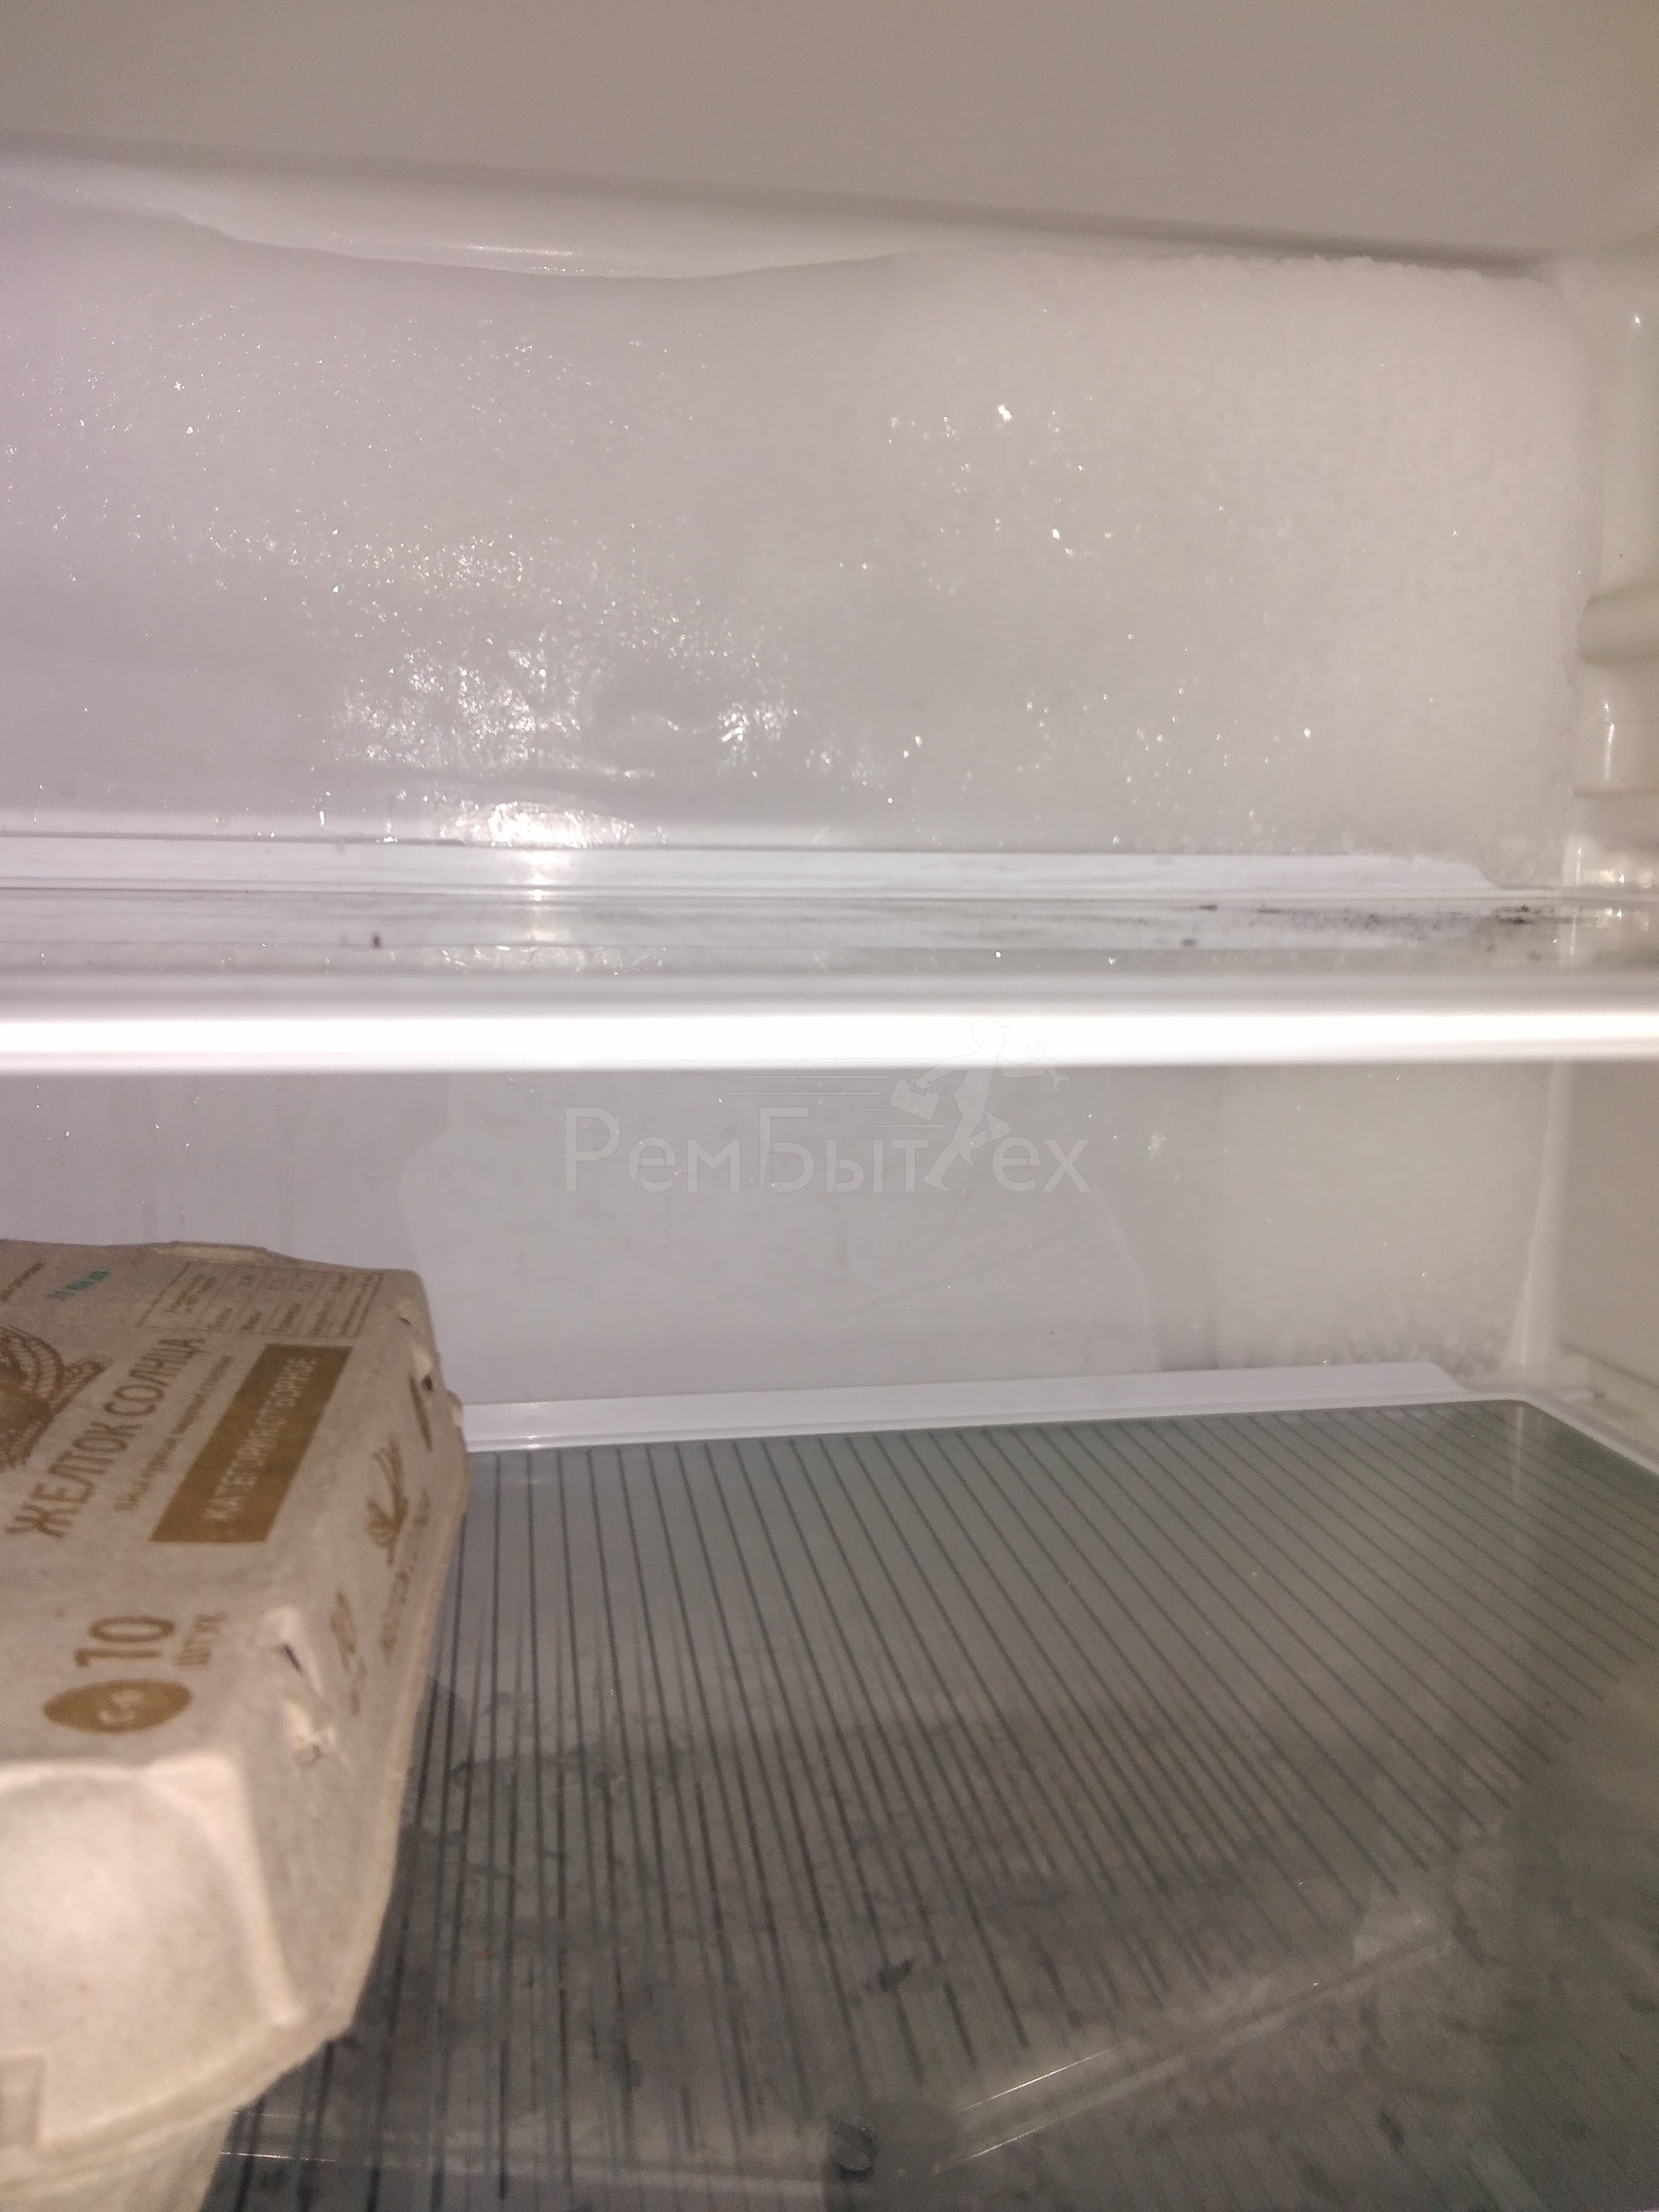 Причины намерзания льда на задней стенке холодильника: что делать